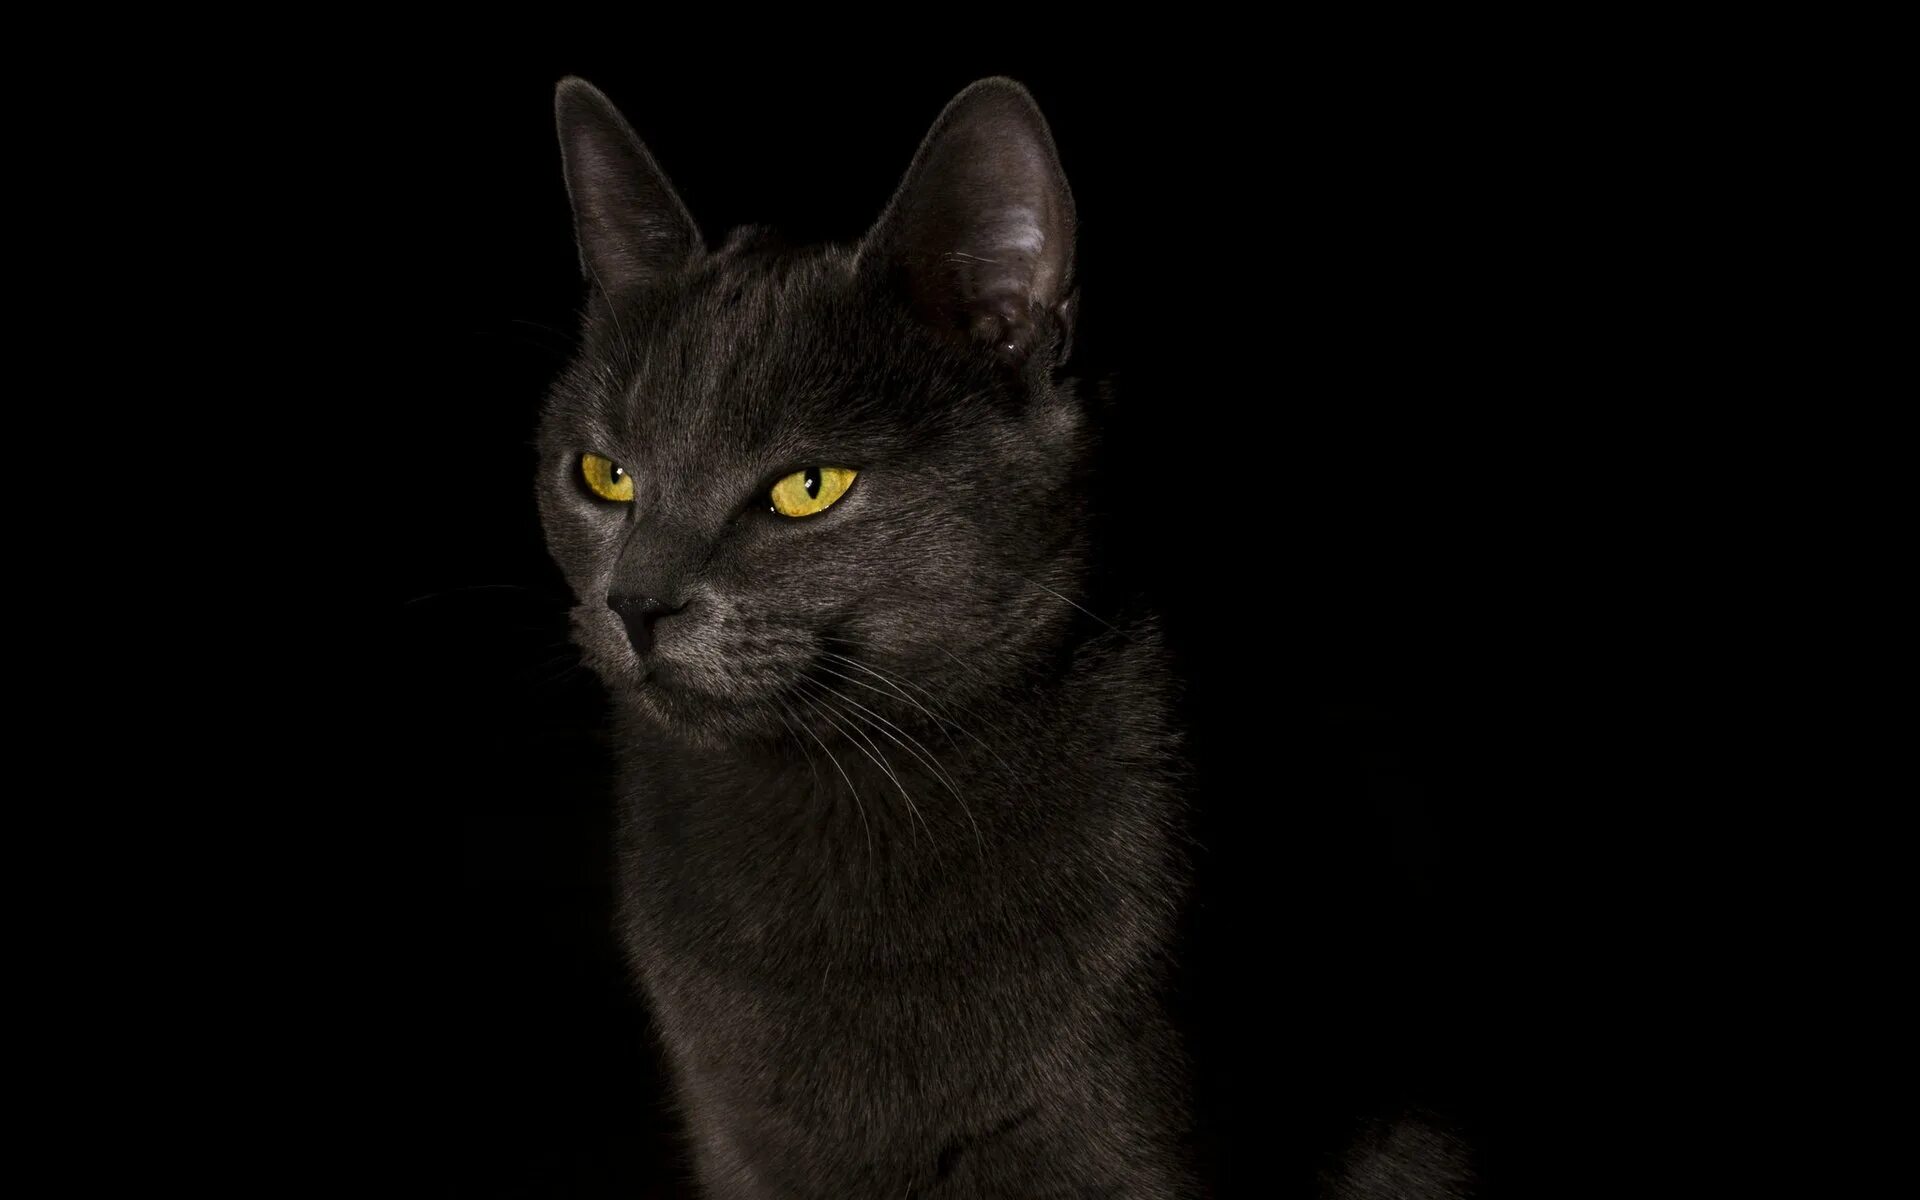 Ф на черном фоне. Черные обои. Обои на рабочий стол кошки. Фото кота на черном фоне. Черный фон картинка.